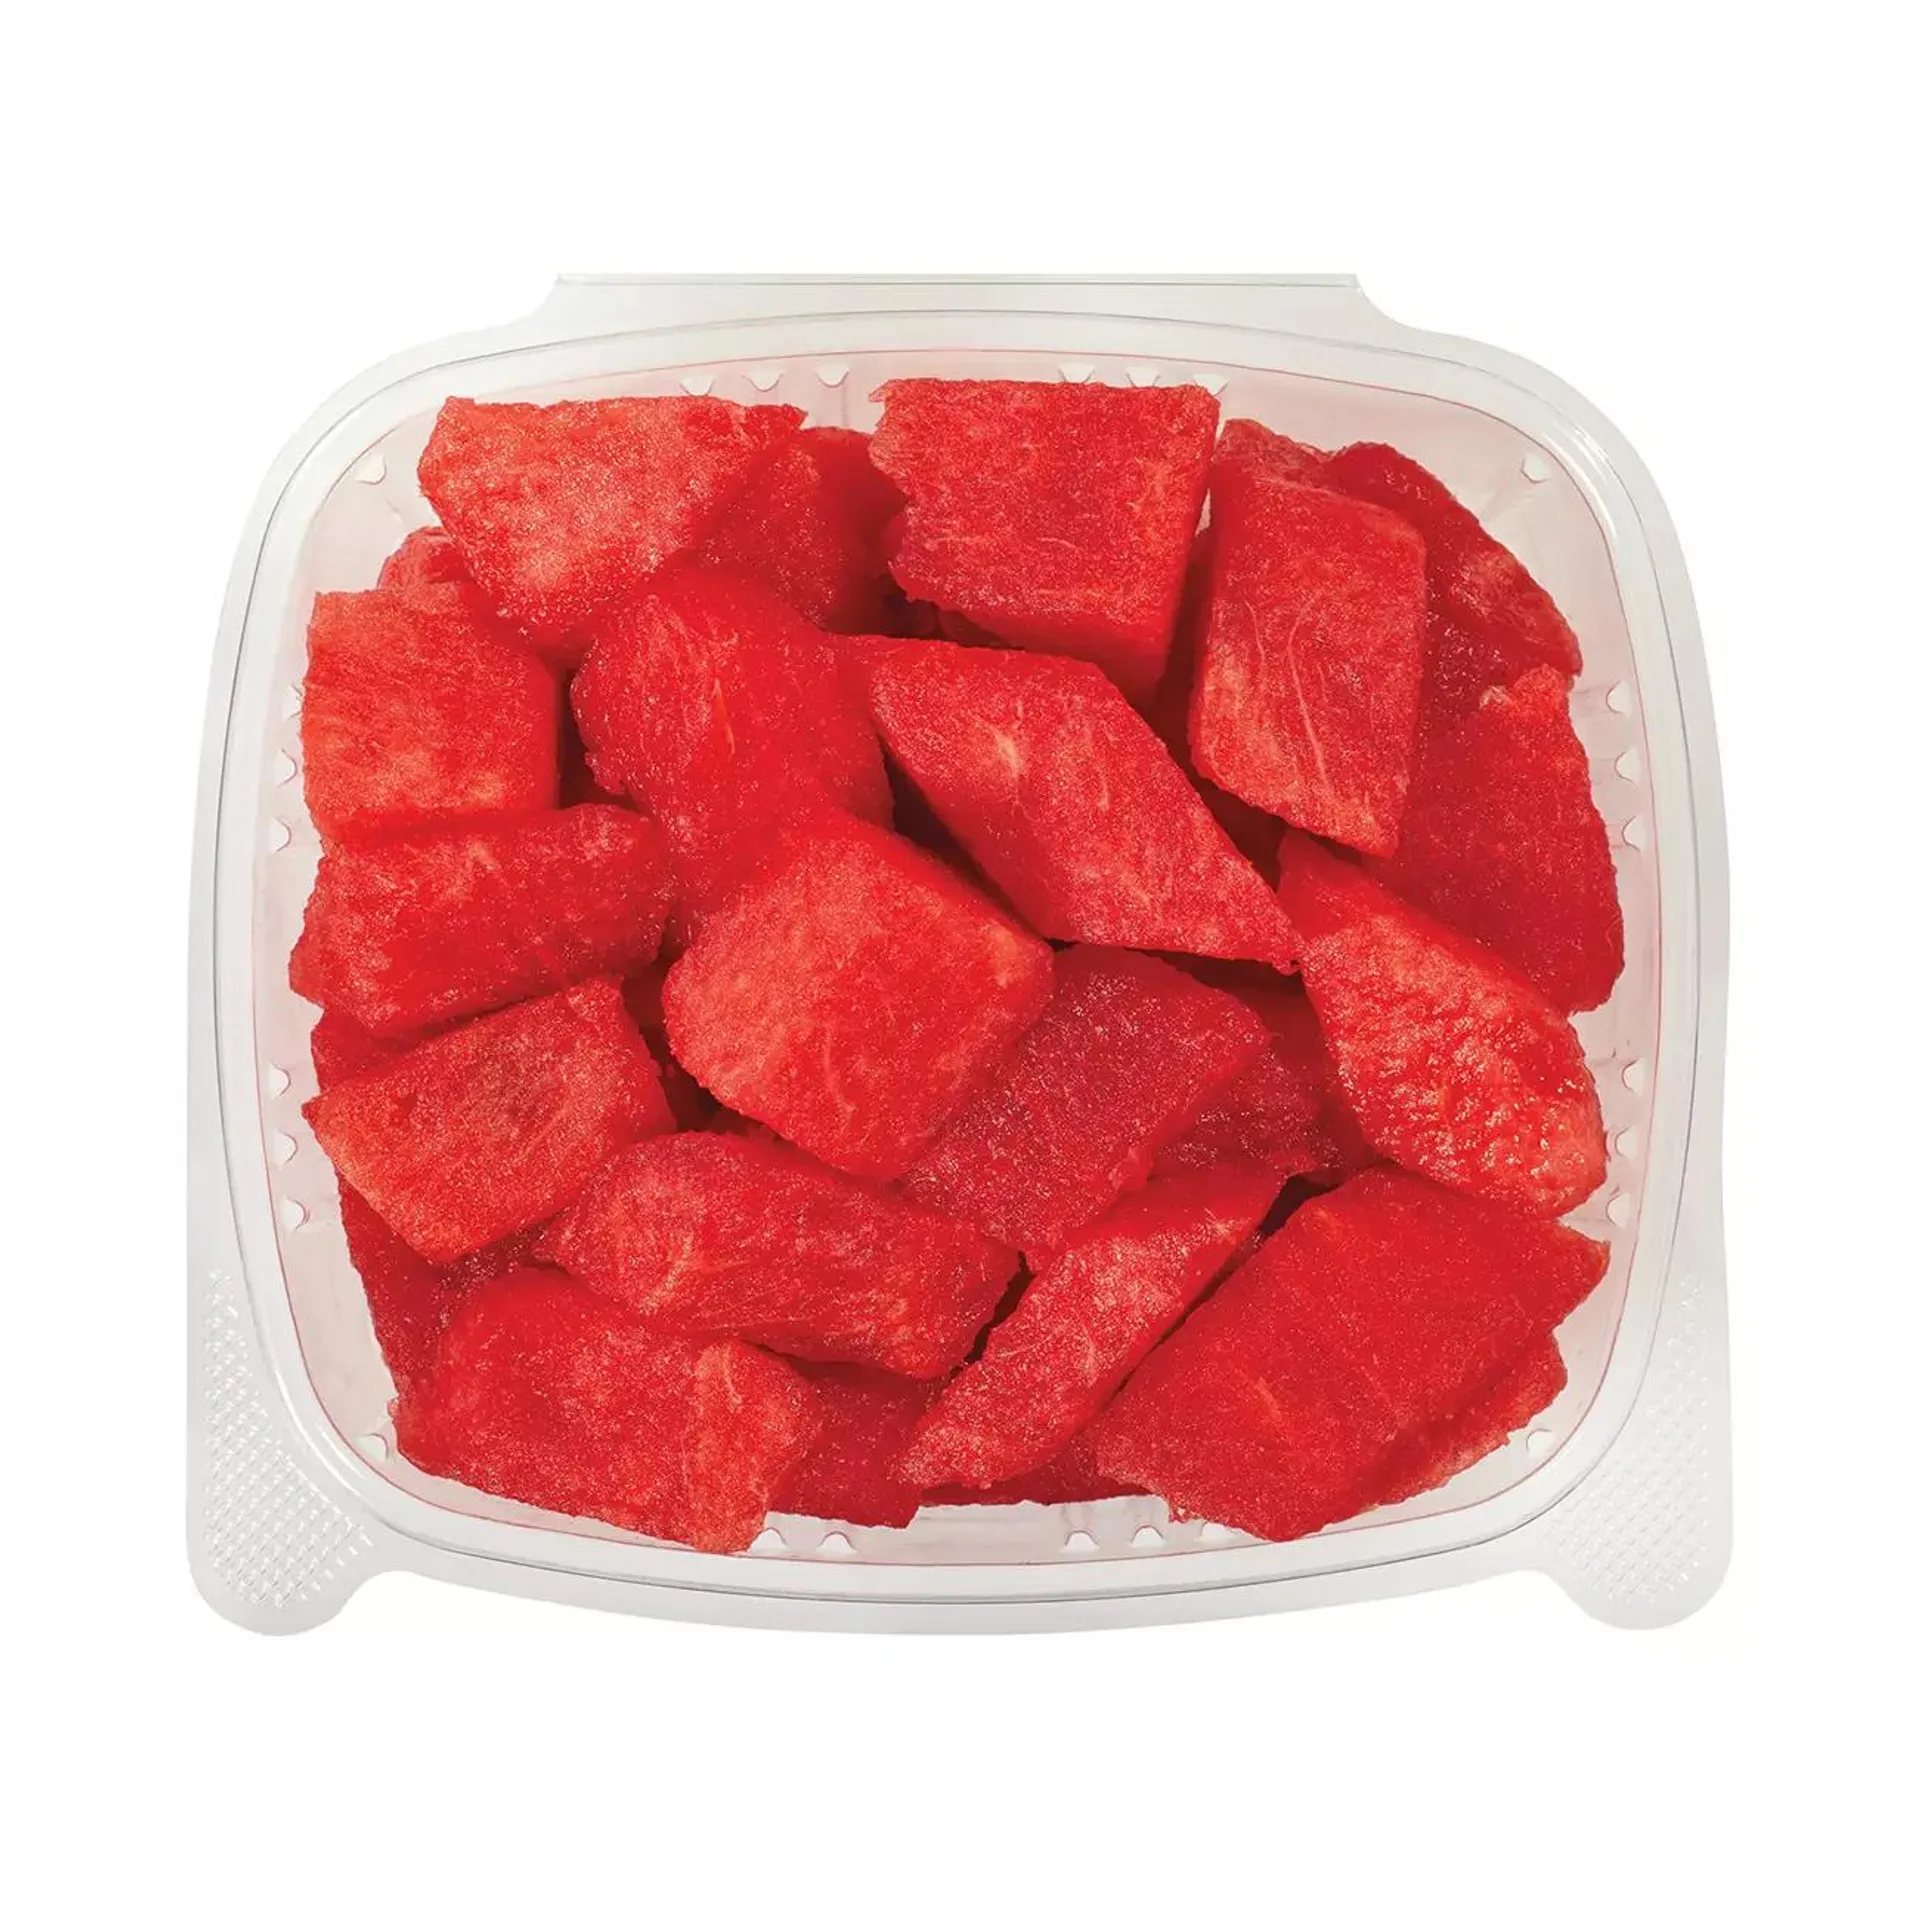 H‑E‑B Fresh Cut Seedless Watermelon - Large